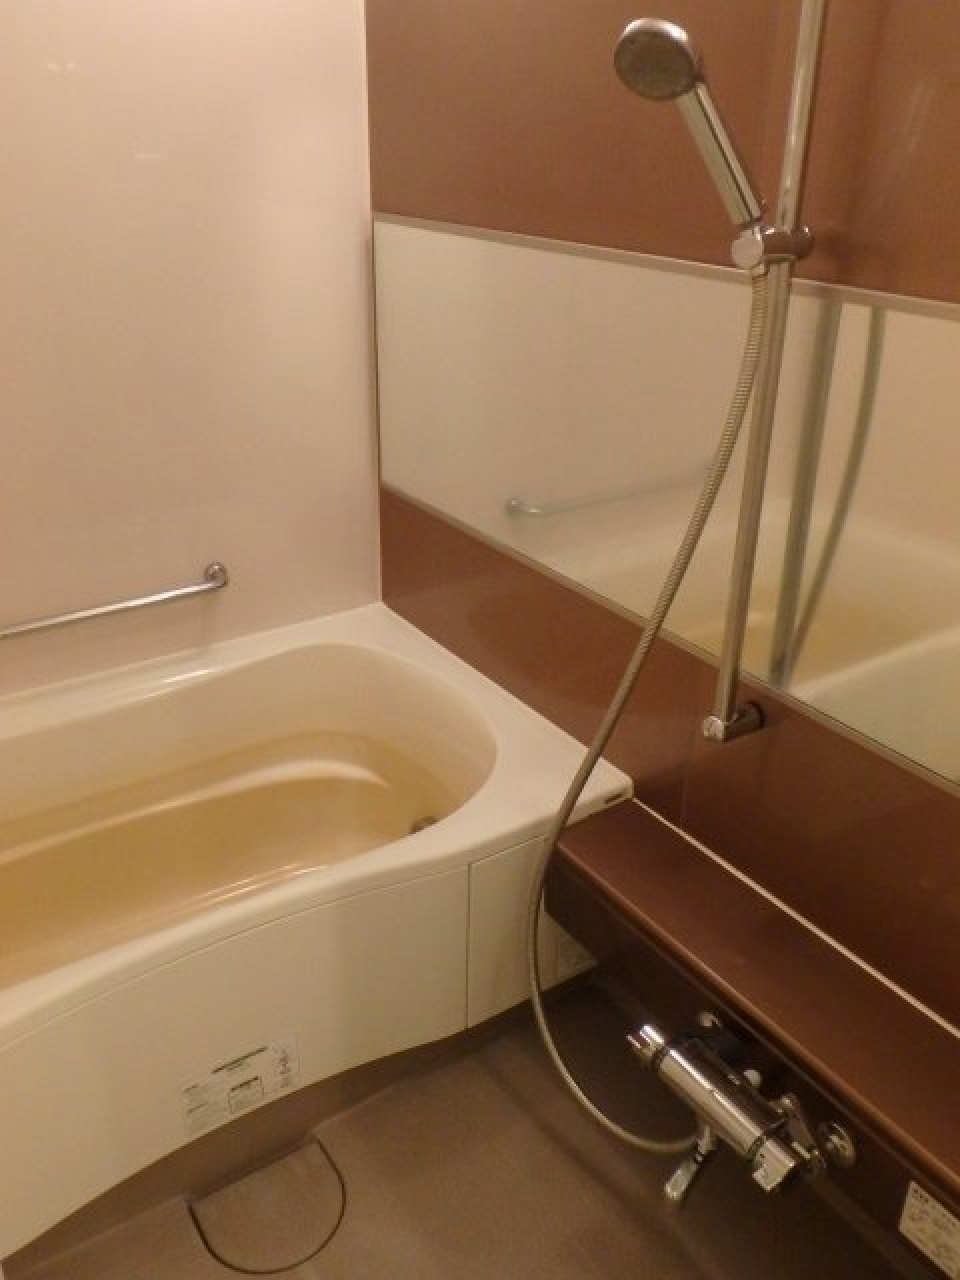 ナチュラルなパネルが導入された浴室です。